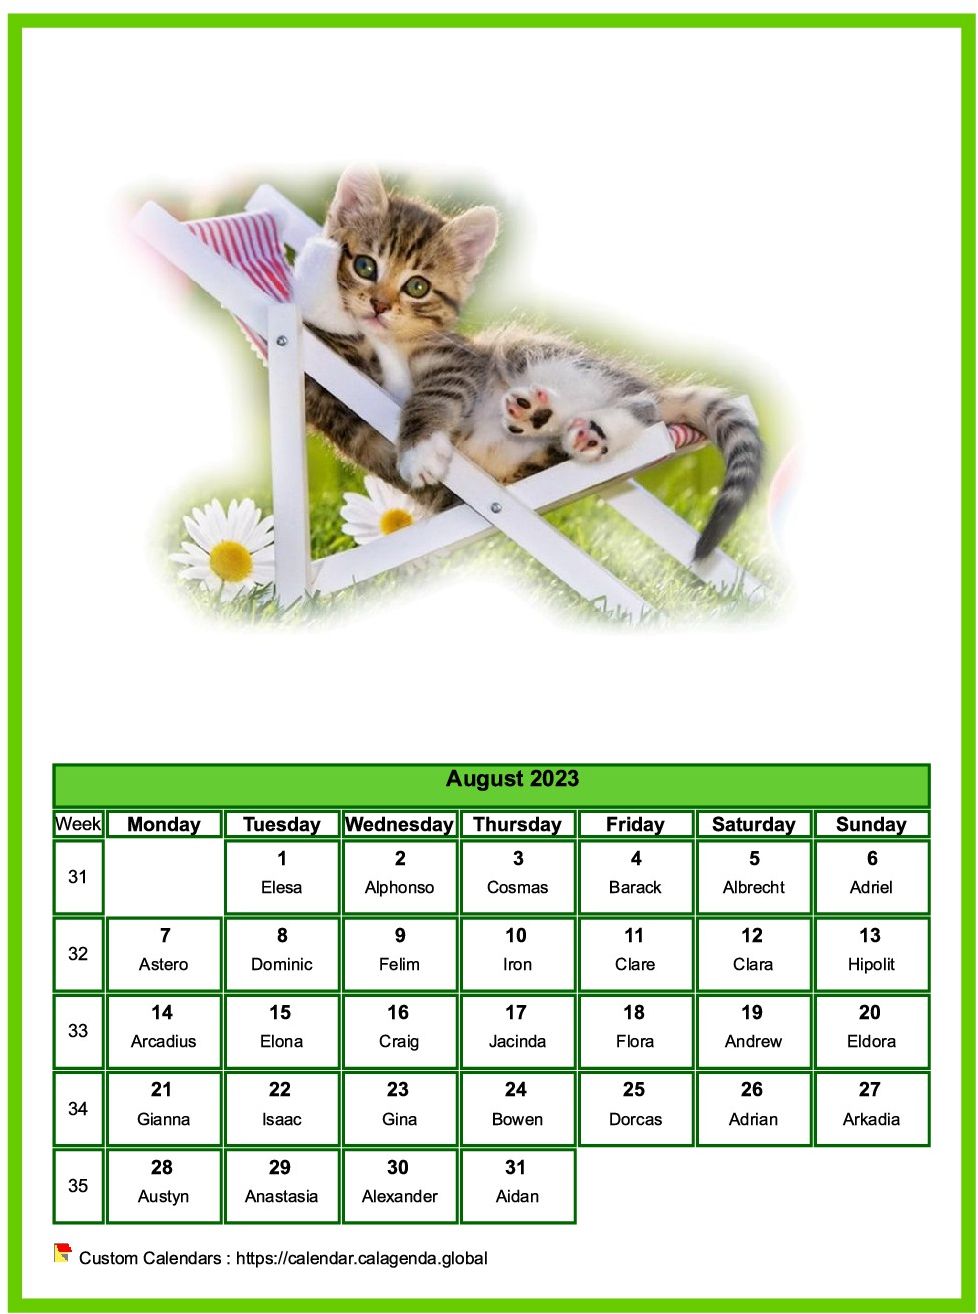 Calendar August 2023 cats